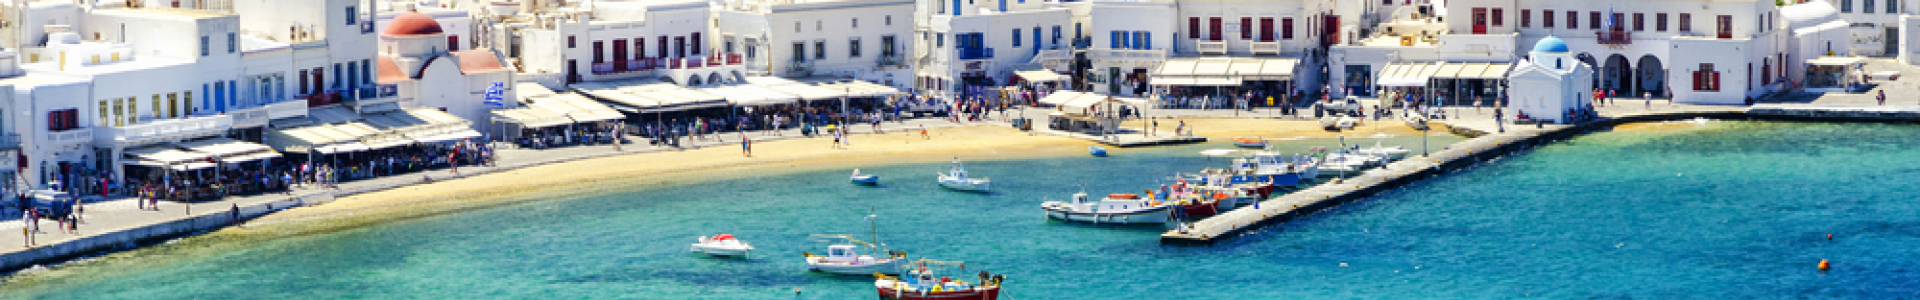 Voyage Privé : vente flash, séjours en Grèce cet été, jusqu'à - 60%